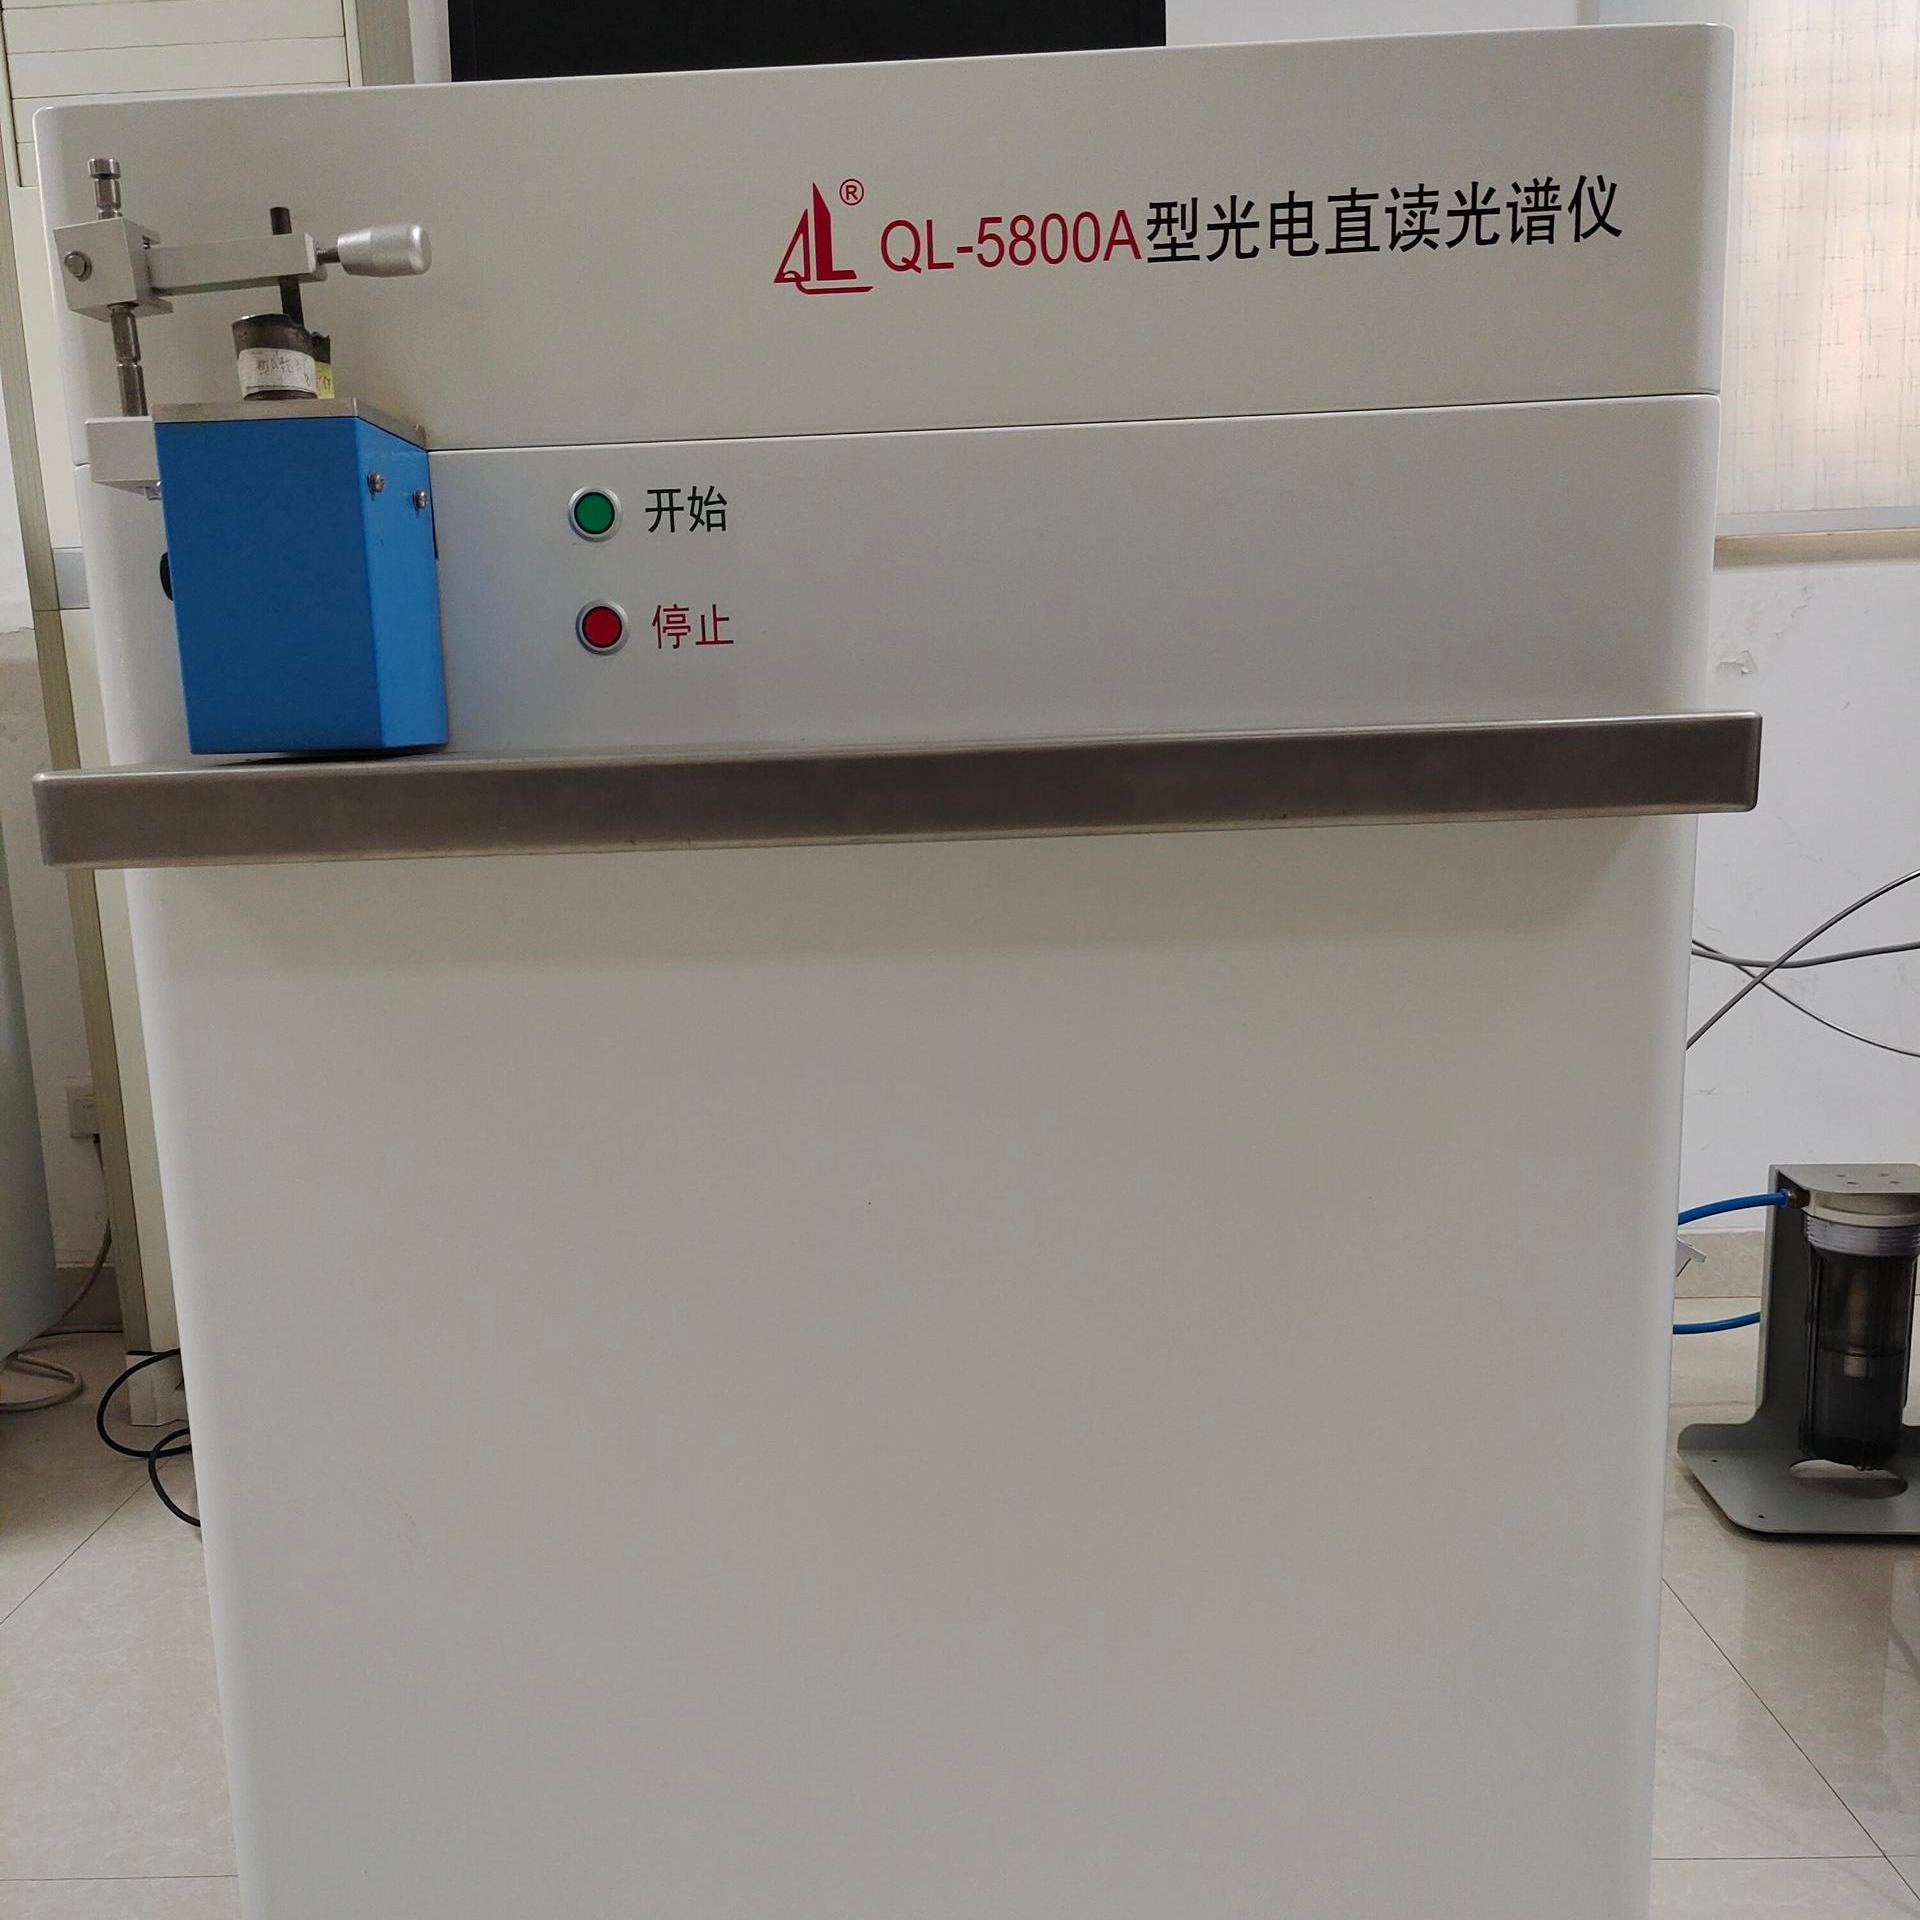 QL-5000A型铸造光谱分析仪器 金属元素直读光谱仪 南京麒麟图片